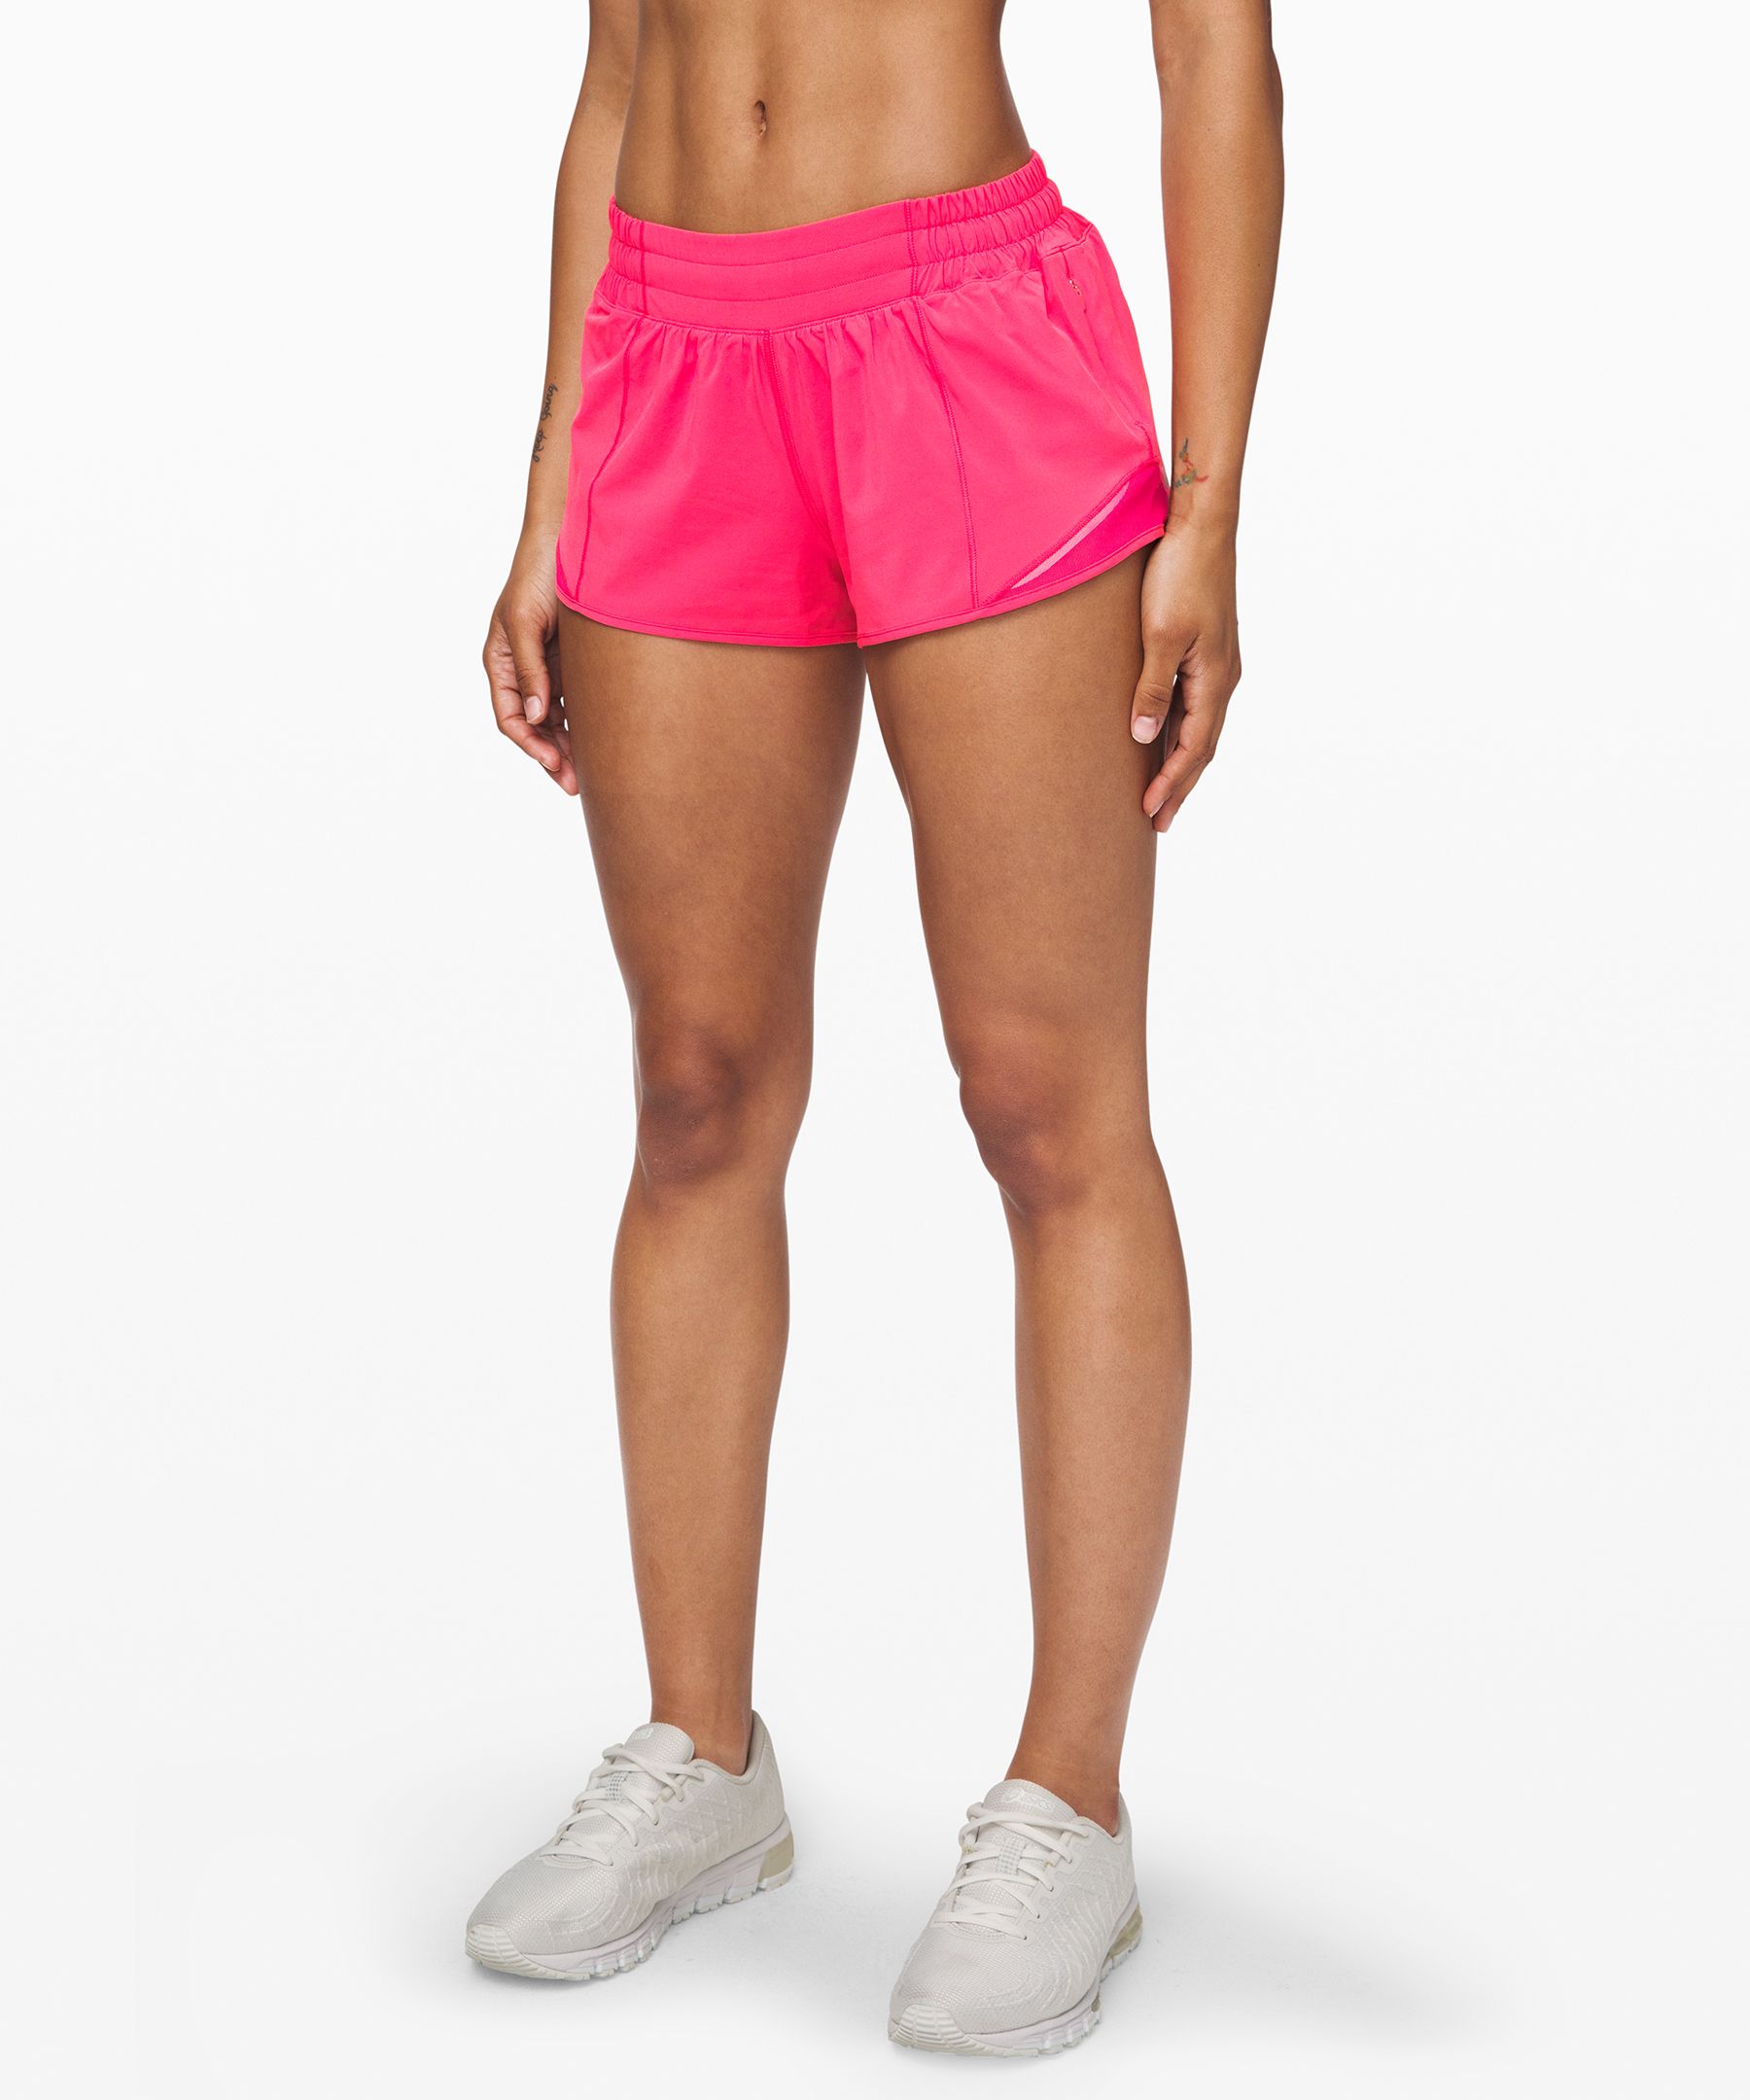 lululemon hot pink shorts